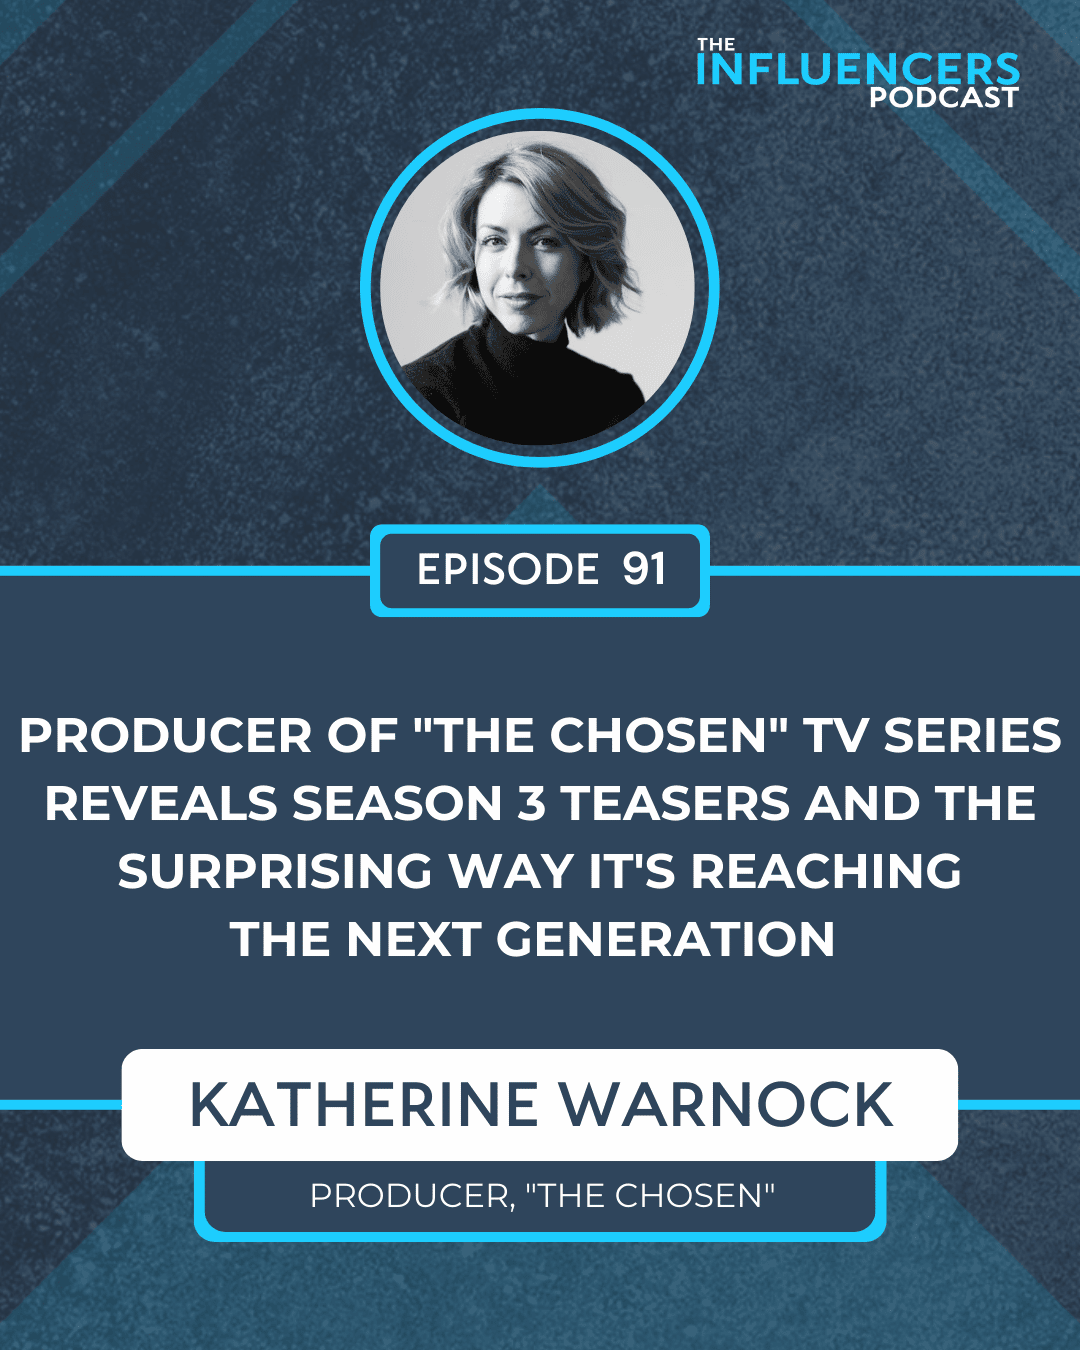 Episode 91 with Katherine Warnock.